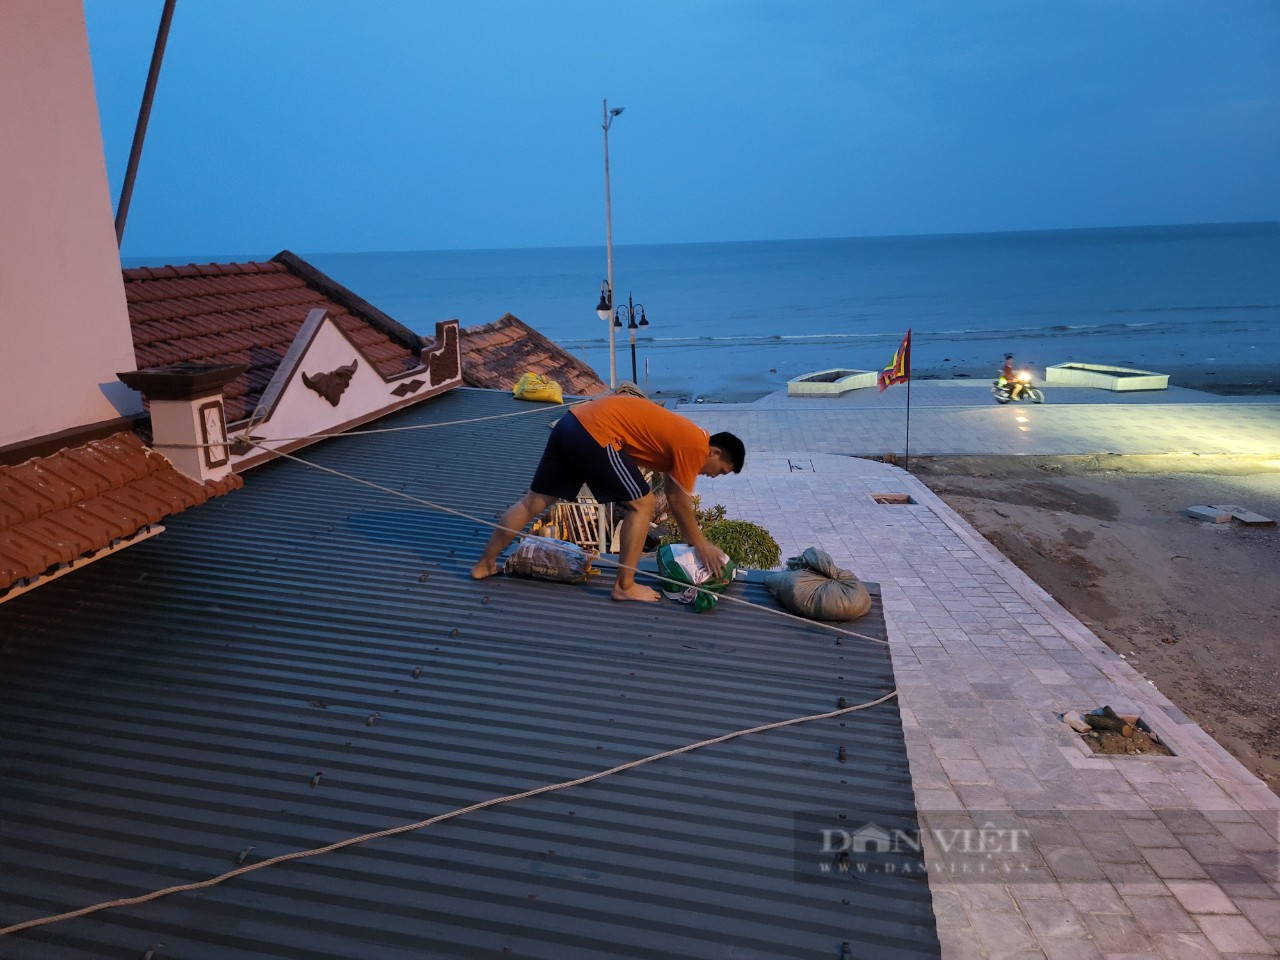 Nghe tin tâm bão Talim về Quảng Ninh, ngư dân từ Ninh Bình tất tả về Móng Cái chống bão - Ảnh 4.